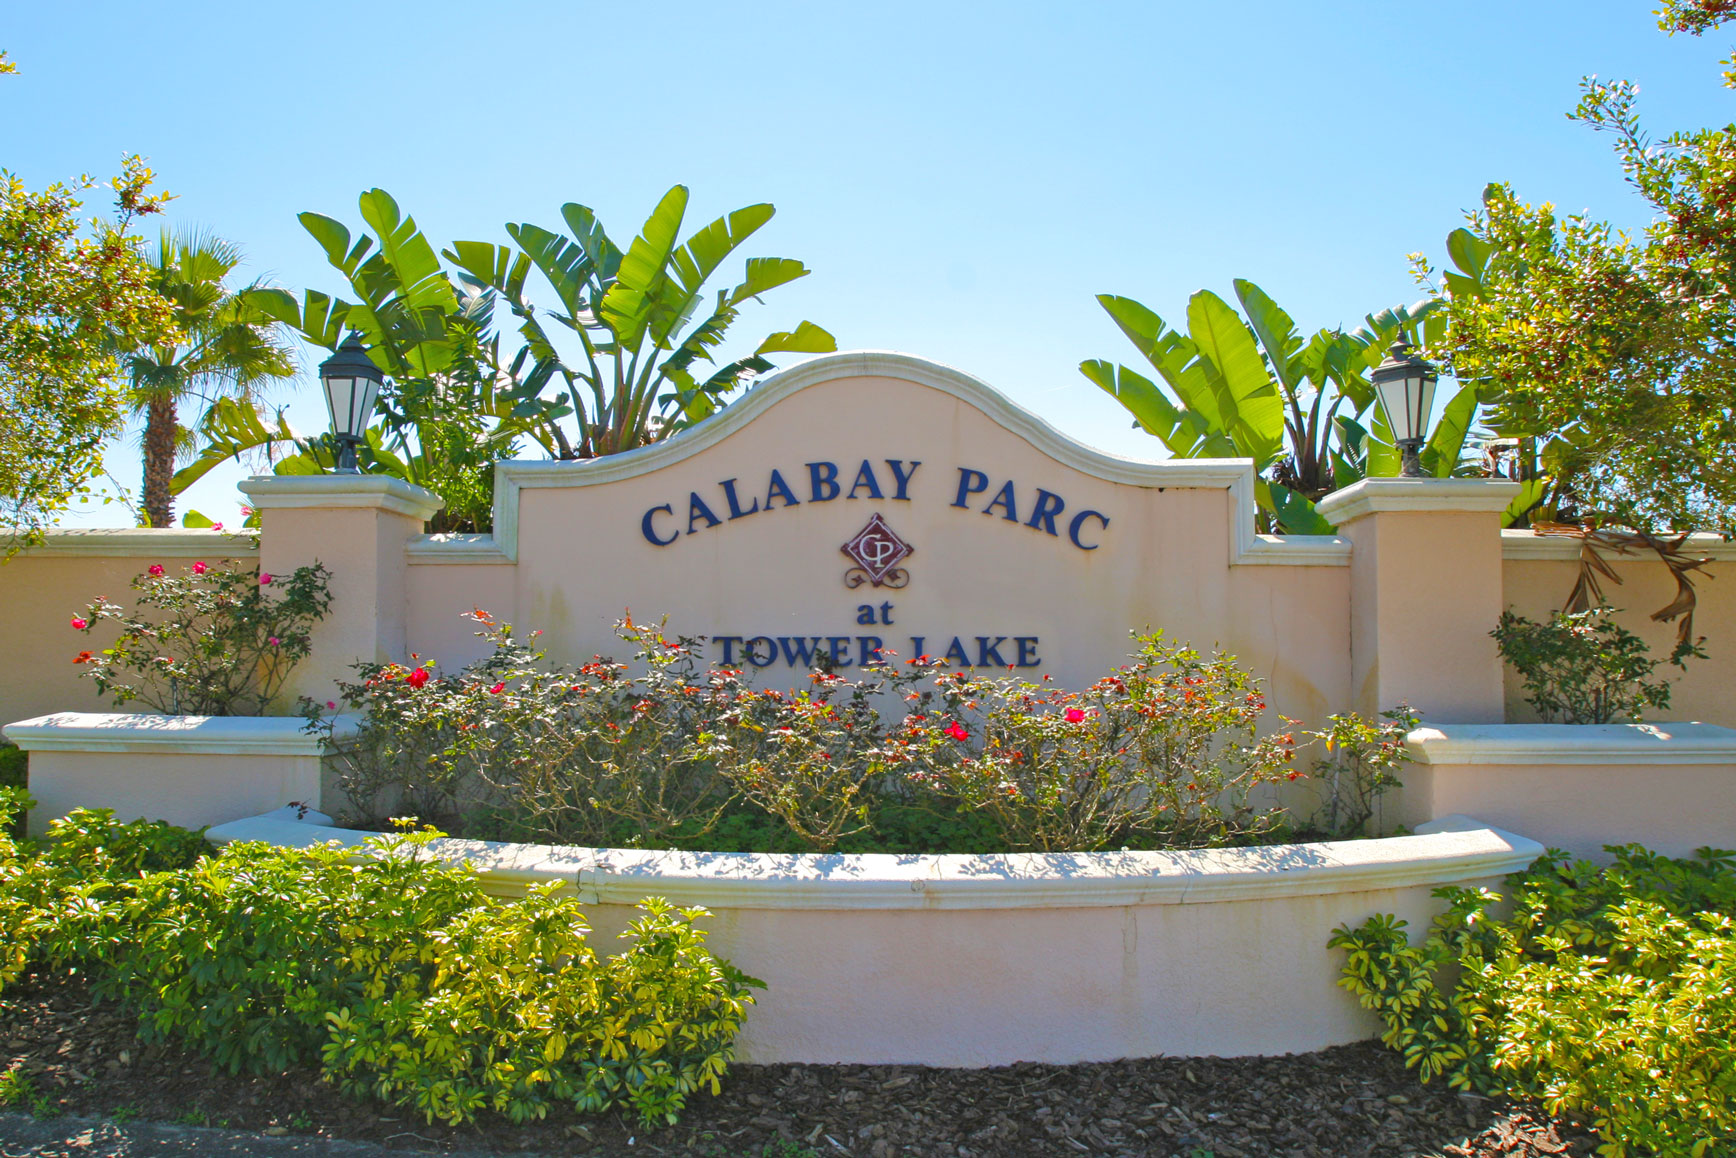 Calabay-Parc-at-Tower-Lake